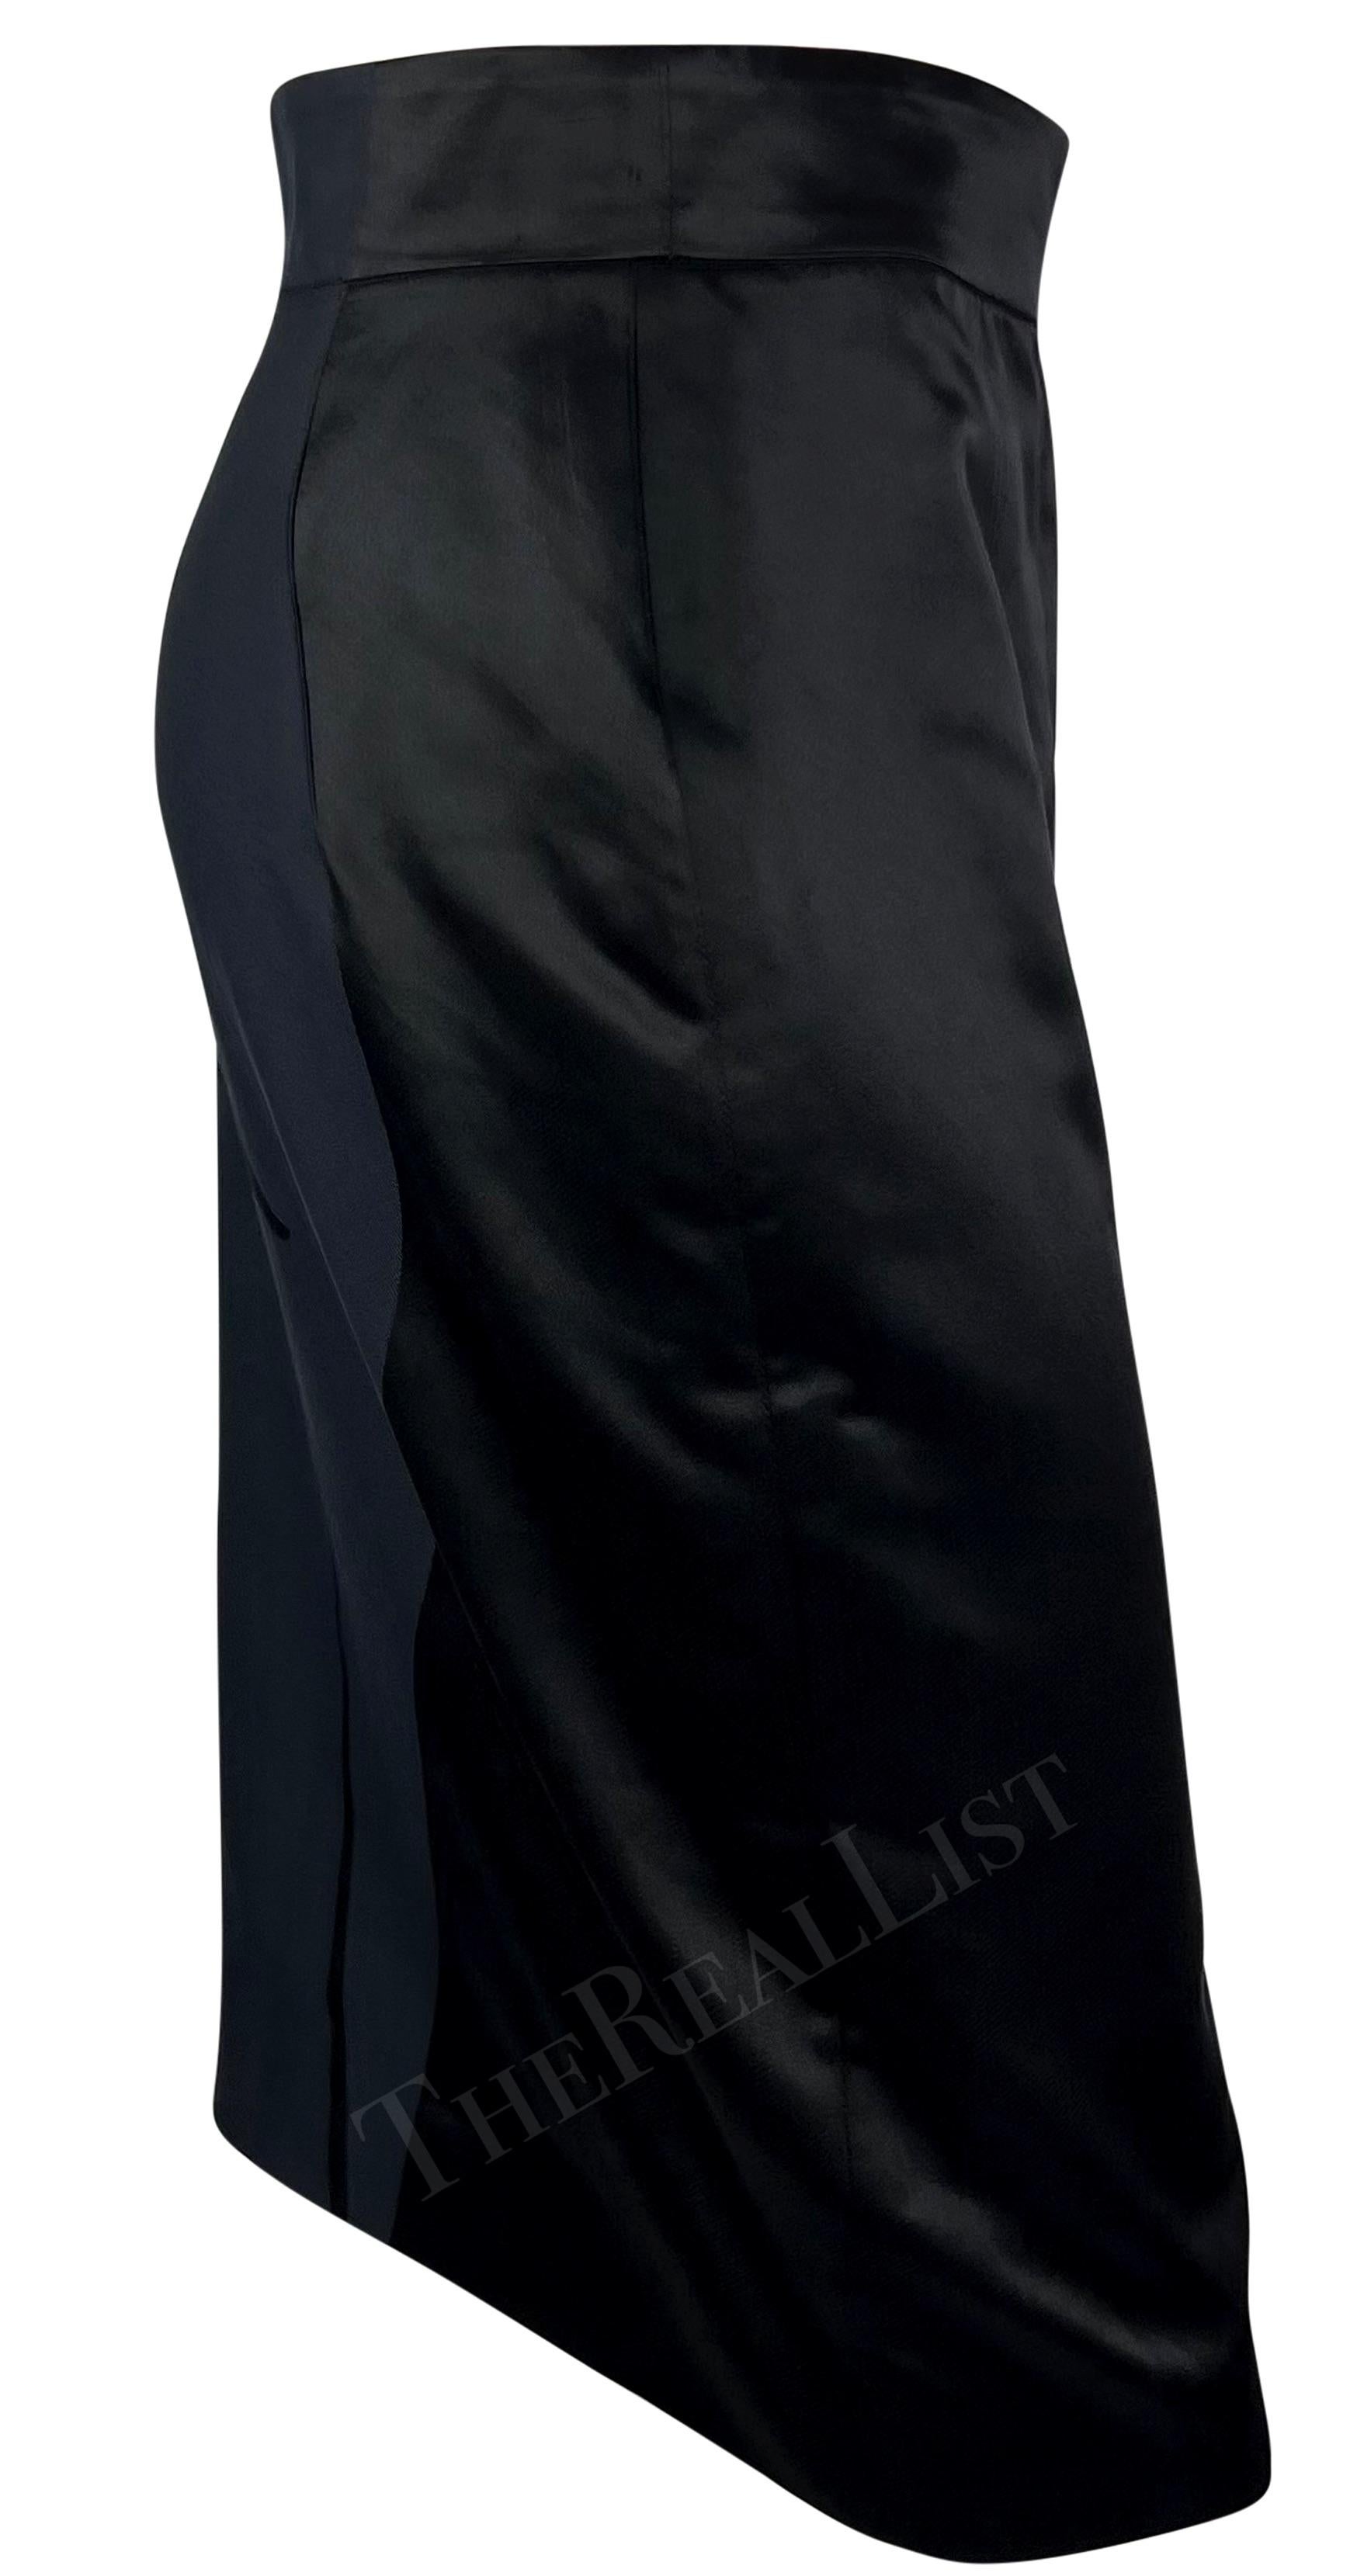 S/S 2003 Yves Saint Laurent by Tom Ford Female Body Print Runway Skirt For Sale 1